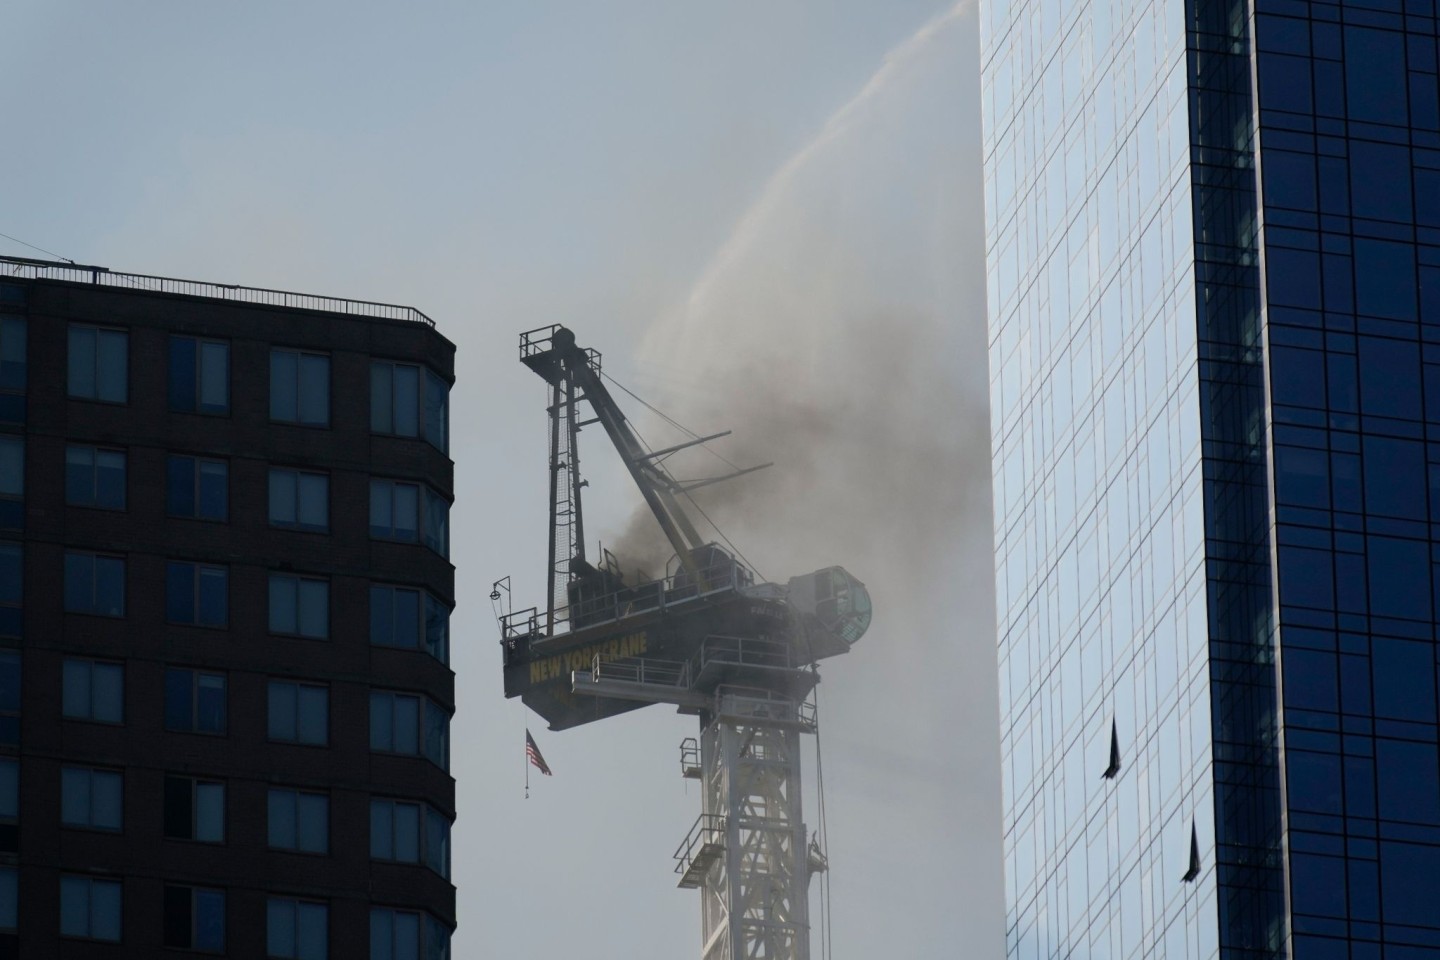 Dieser Kran fing bei Bauarbeiten in New York Feuer und brach anschließend teilweise zusammen.